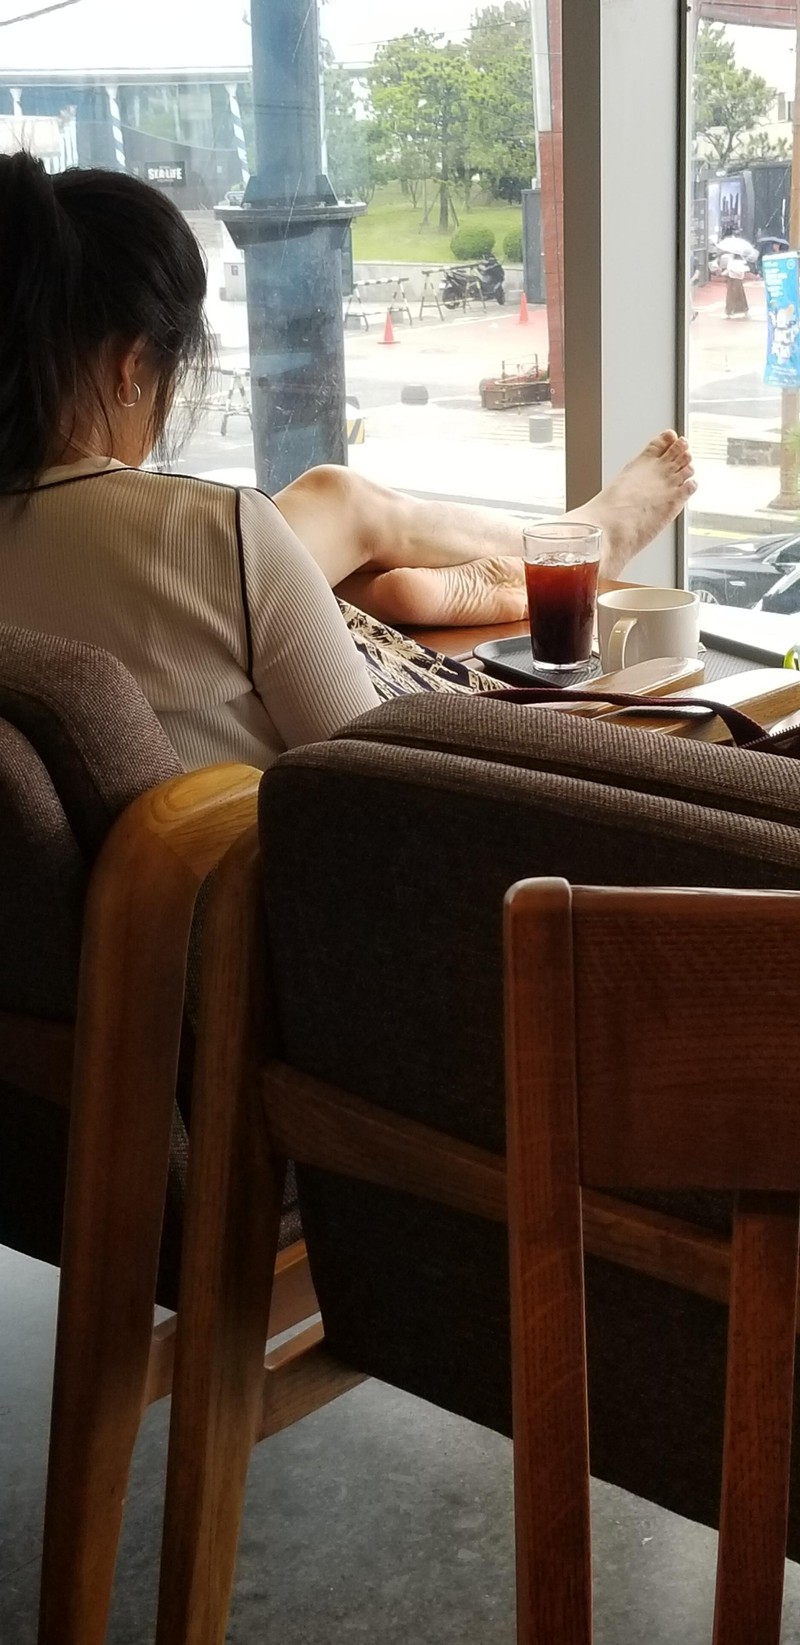 Frau, die im Restaurant ihre Schuhe ausgezogen hat